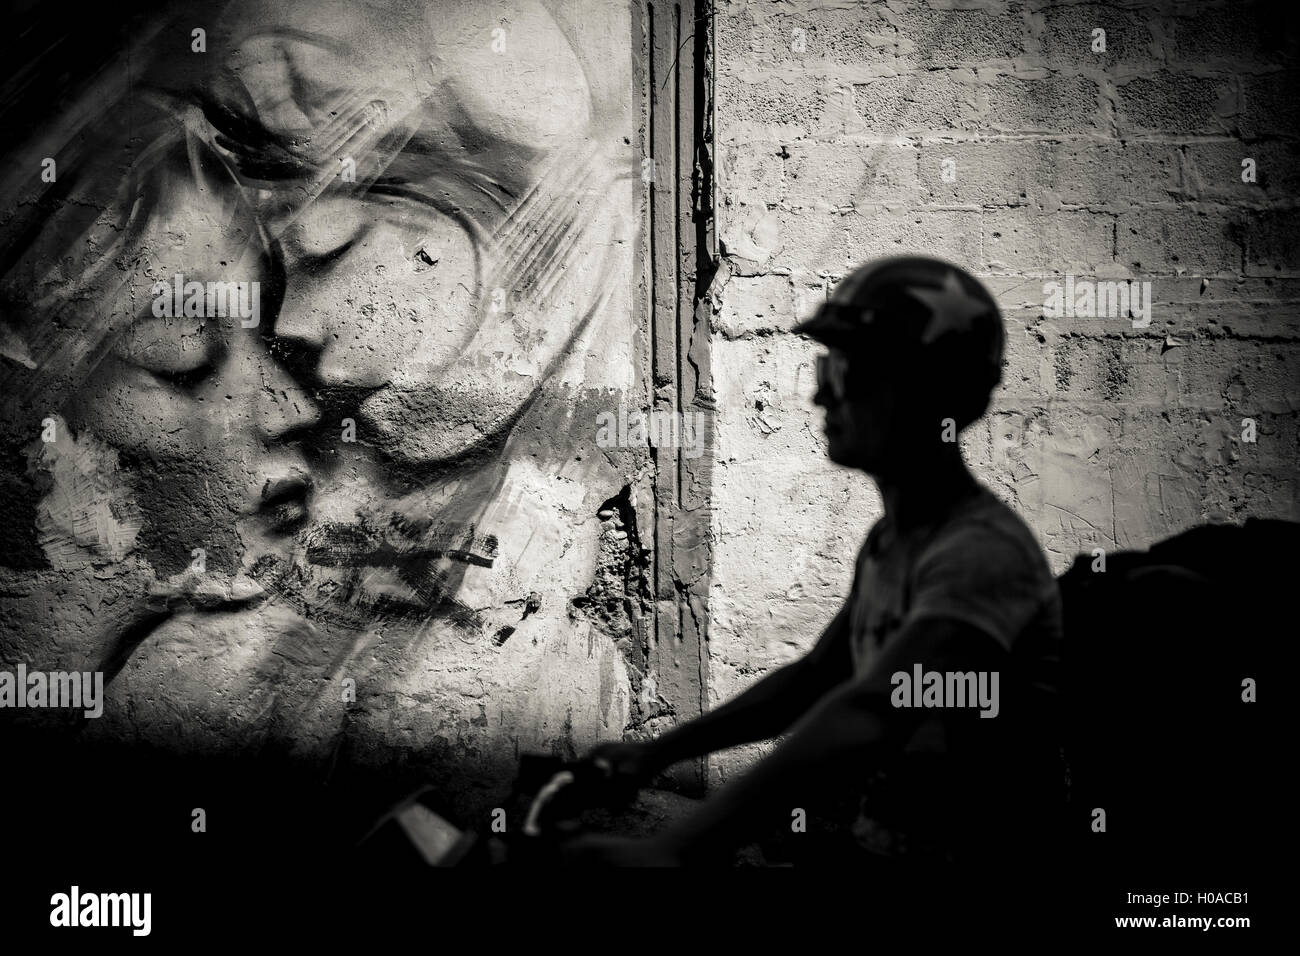 Les graffitis à Beyrouth - 10/08/2015 - Liban / Beyrouth - Mar Mikhail, Beyrouth, août 2015. Un mur par Dubaï basée en Nouvelle-Zélande street artist Gary Yong. - Bilal Tarabey / Le Pictorium Banque D'Images